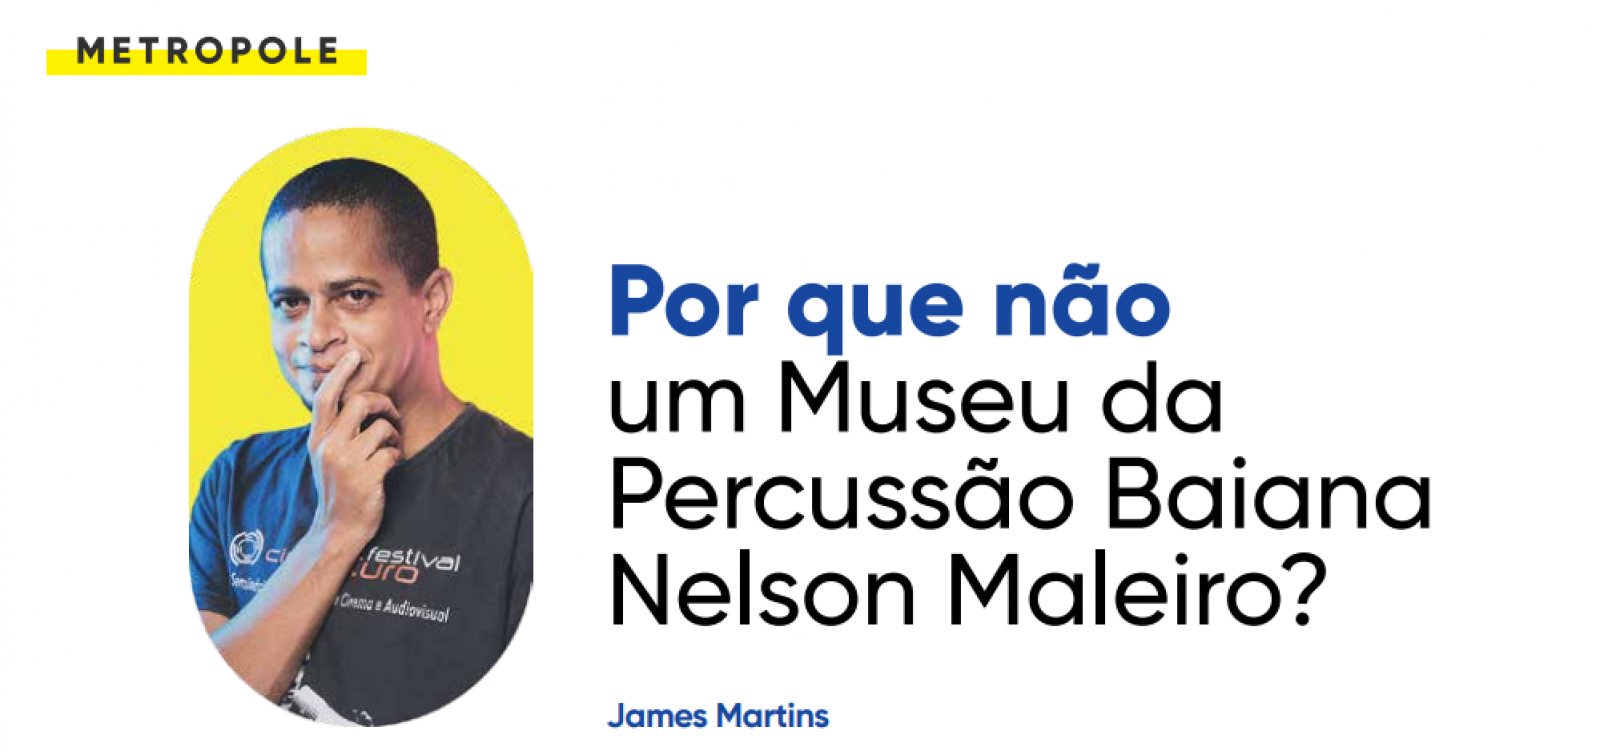 Por que não um Museu da Percussão Baiana Nelson Maleiro?